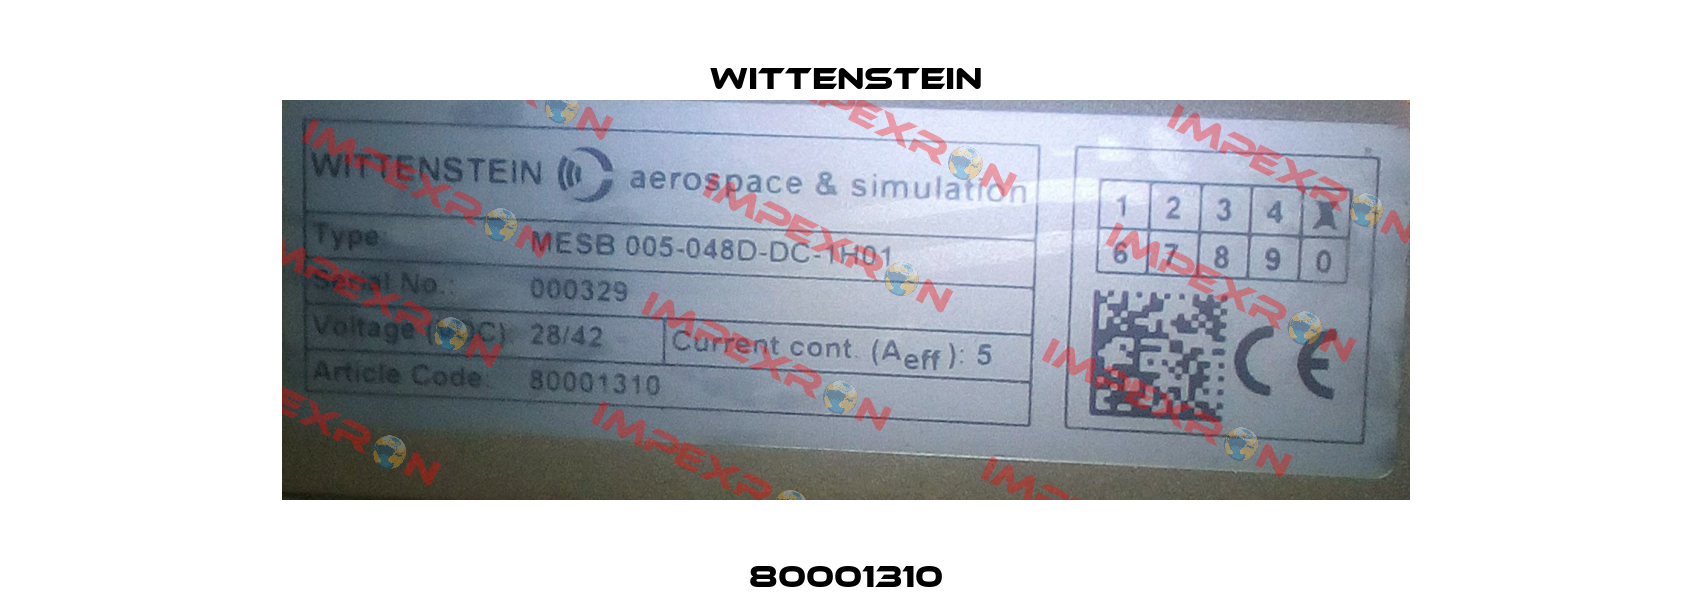 80001310 Wittenstein